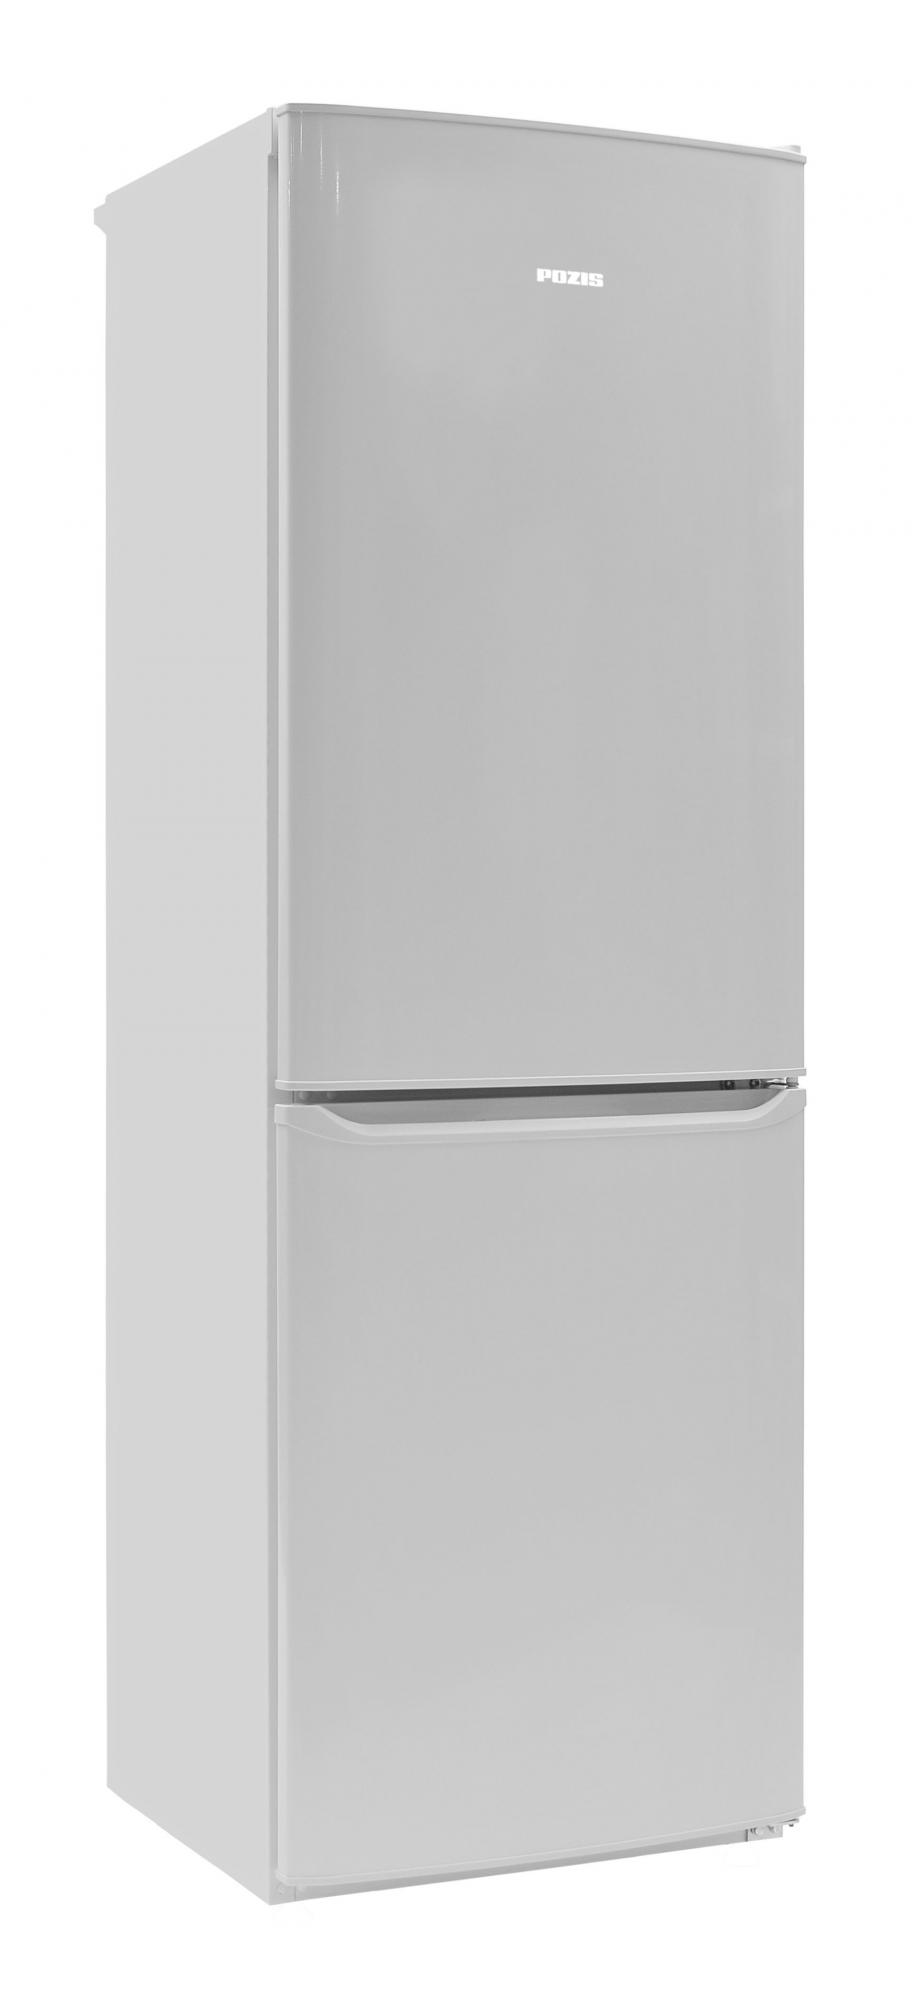 Холодильник POZIS RK-139 белый																		 — описание, фото, цены в интернет-магазине Премьер Техно